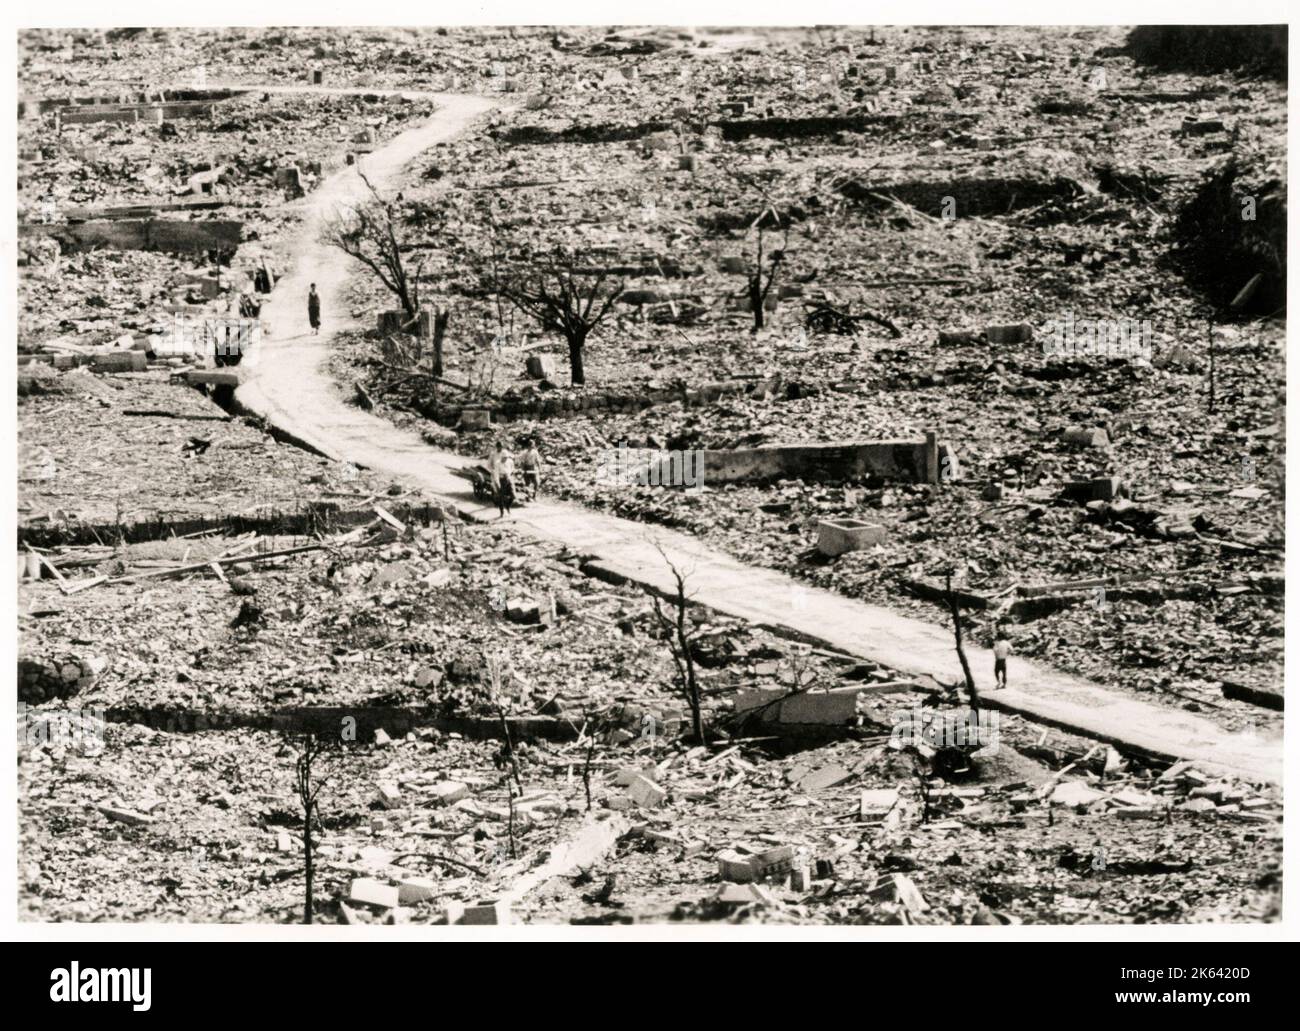 Stadtruinen nach Atomexplosion - Atombombe Japan, 2. Weltkrieg 1945 Stockfoto